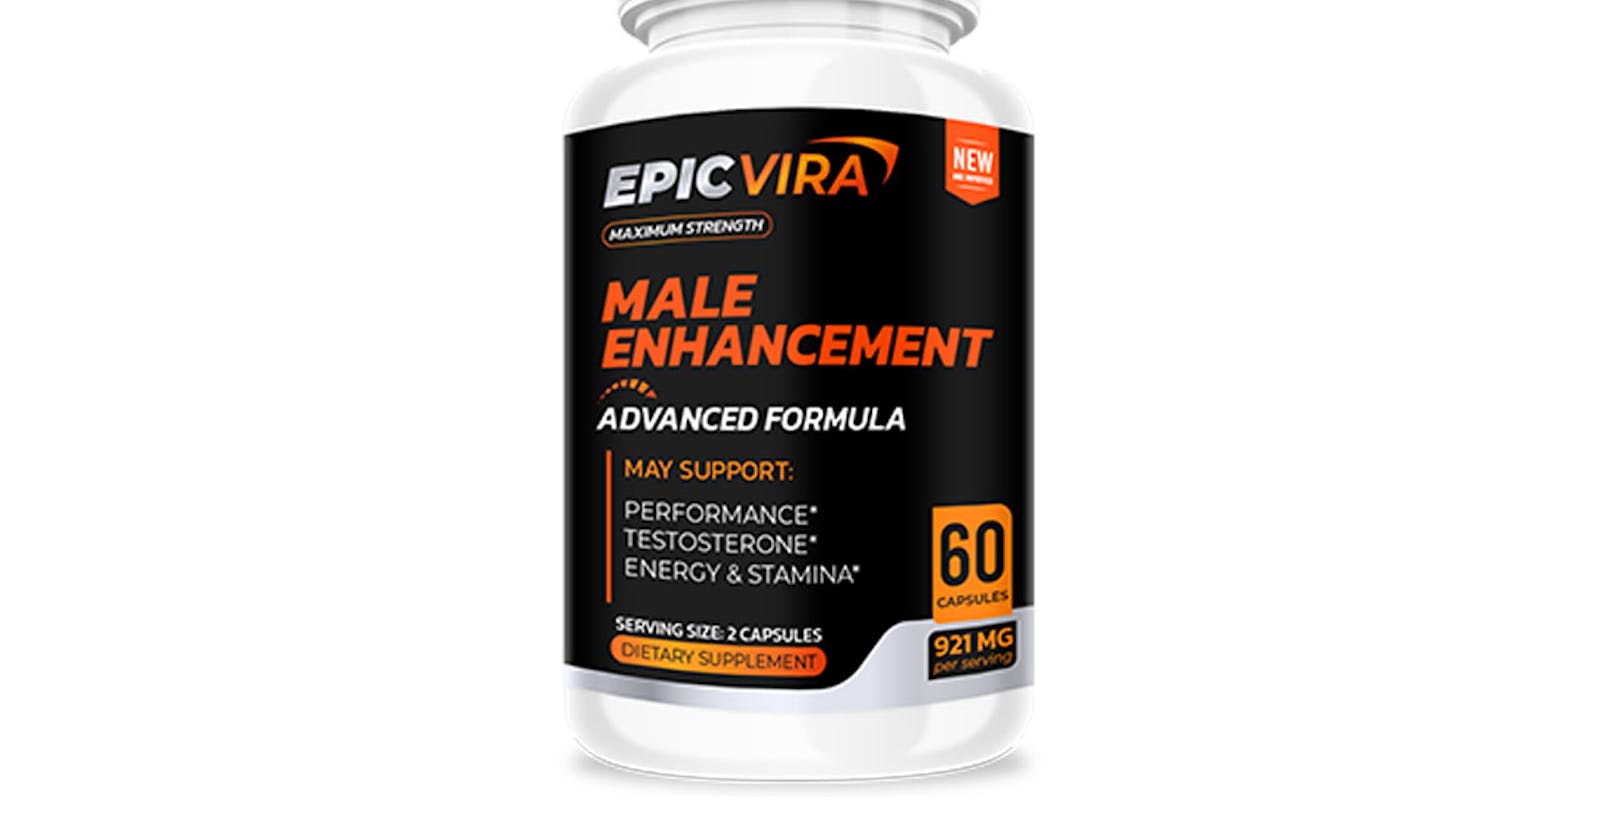 EpicVira Male Enhancement Official Reviews